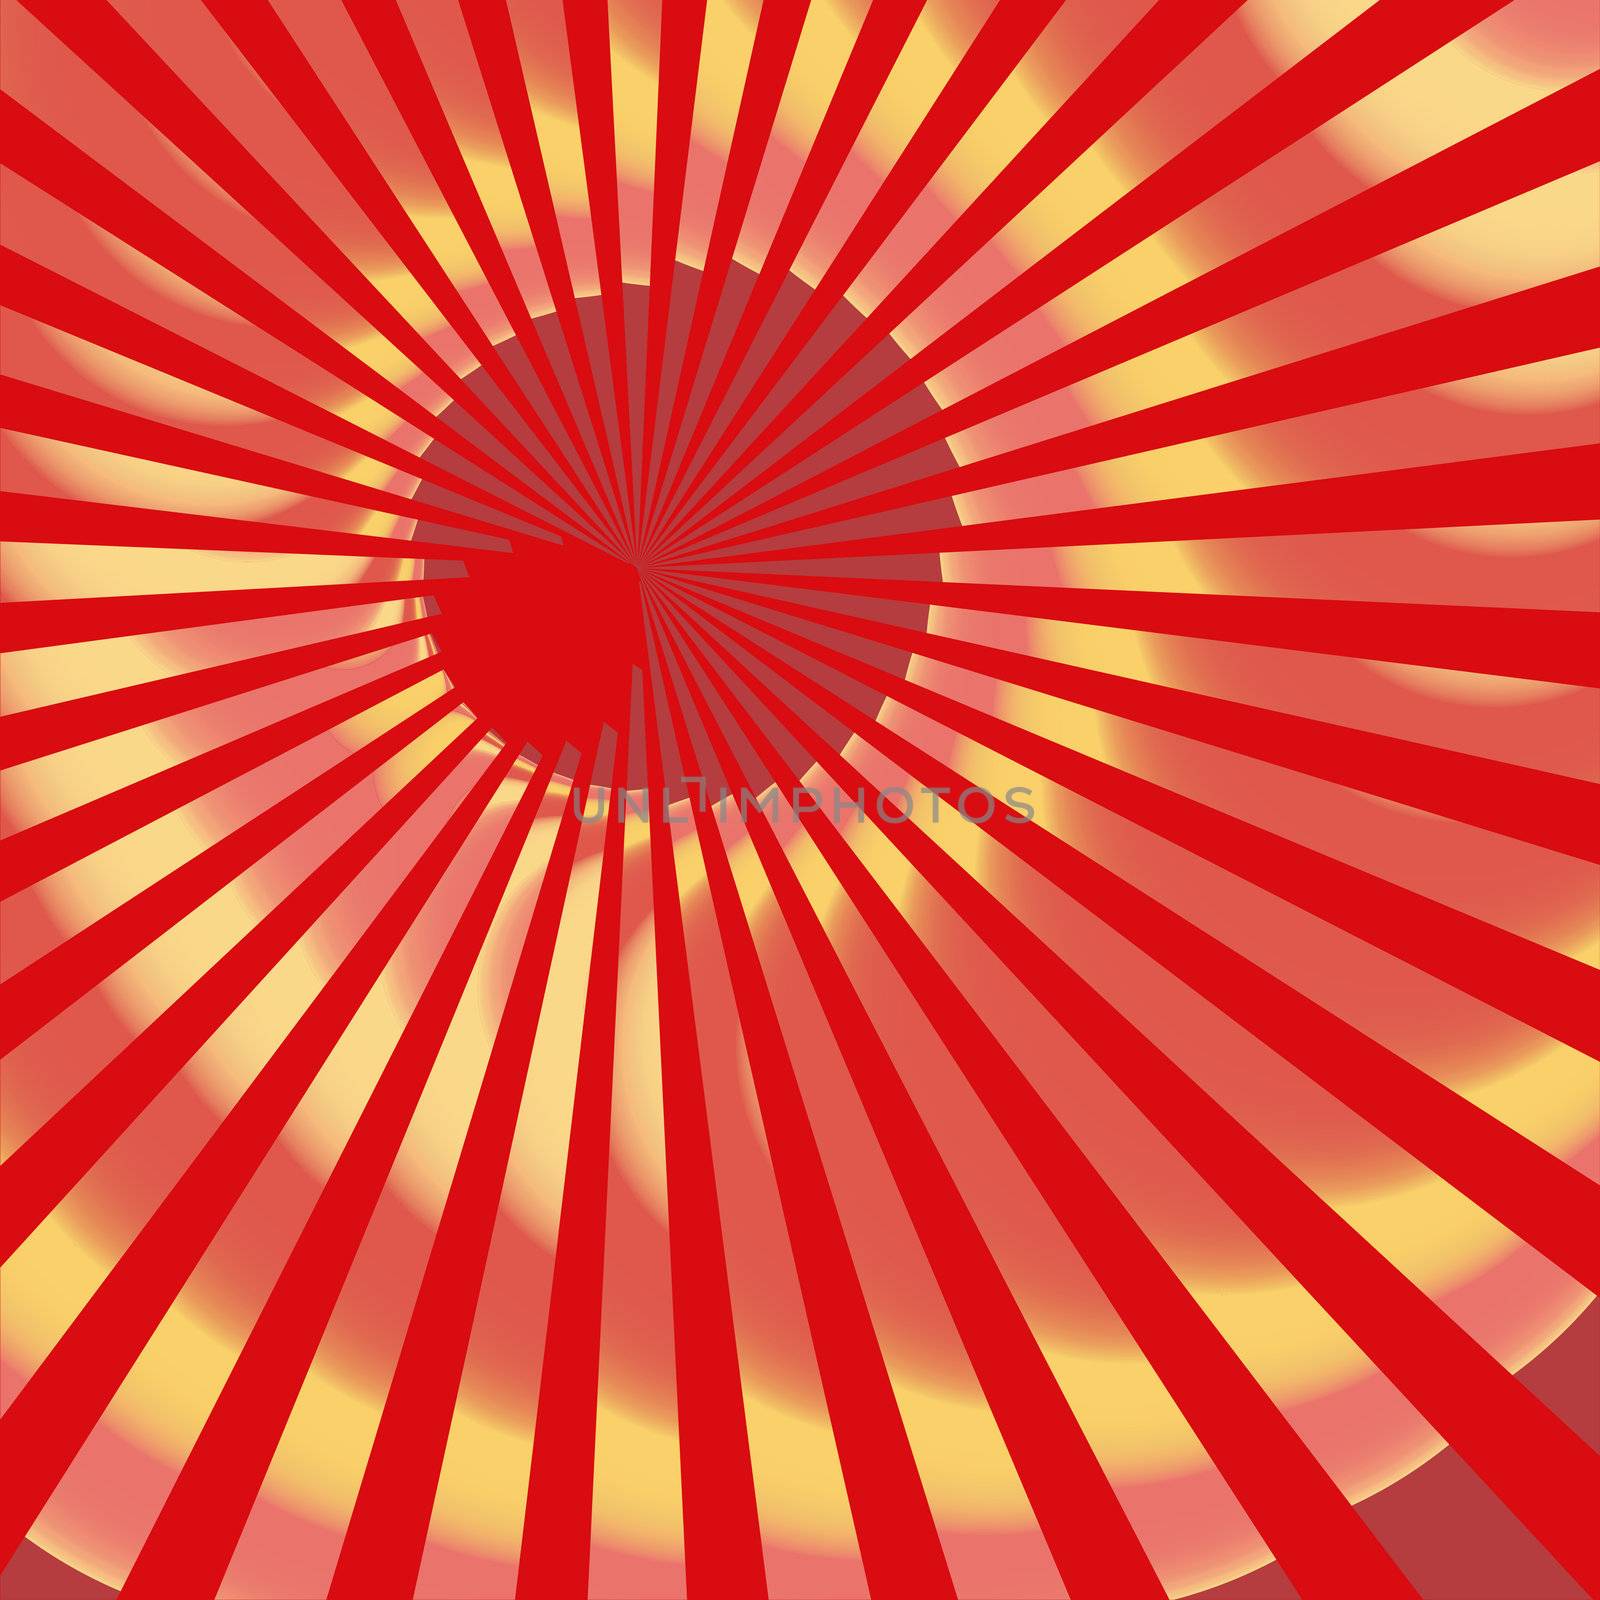 red golden starburst background with spiral effect